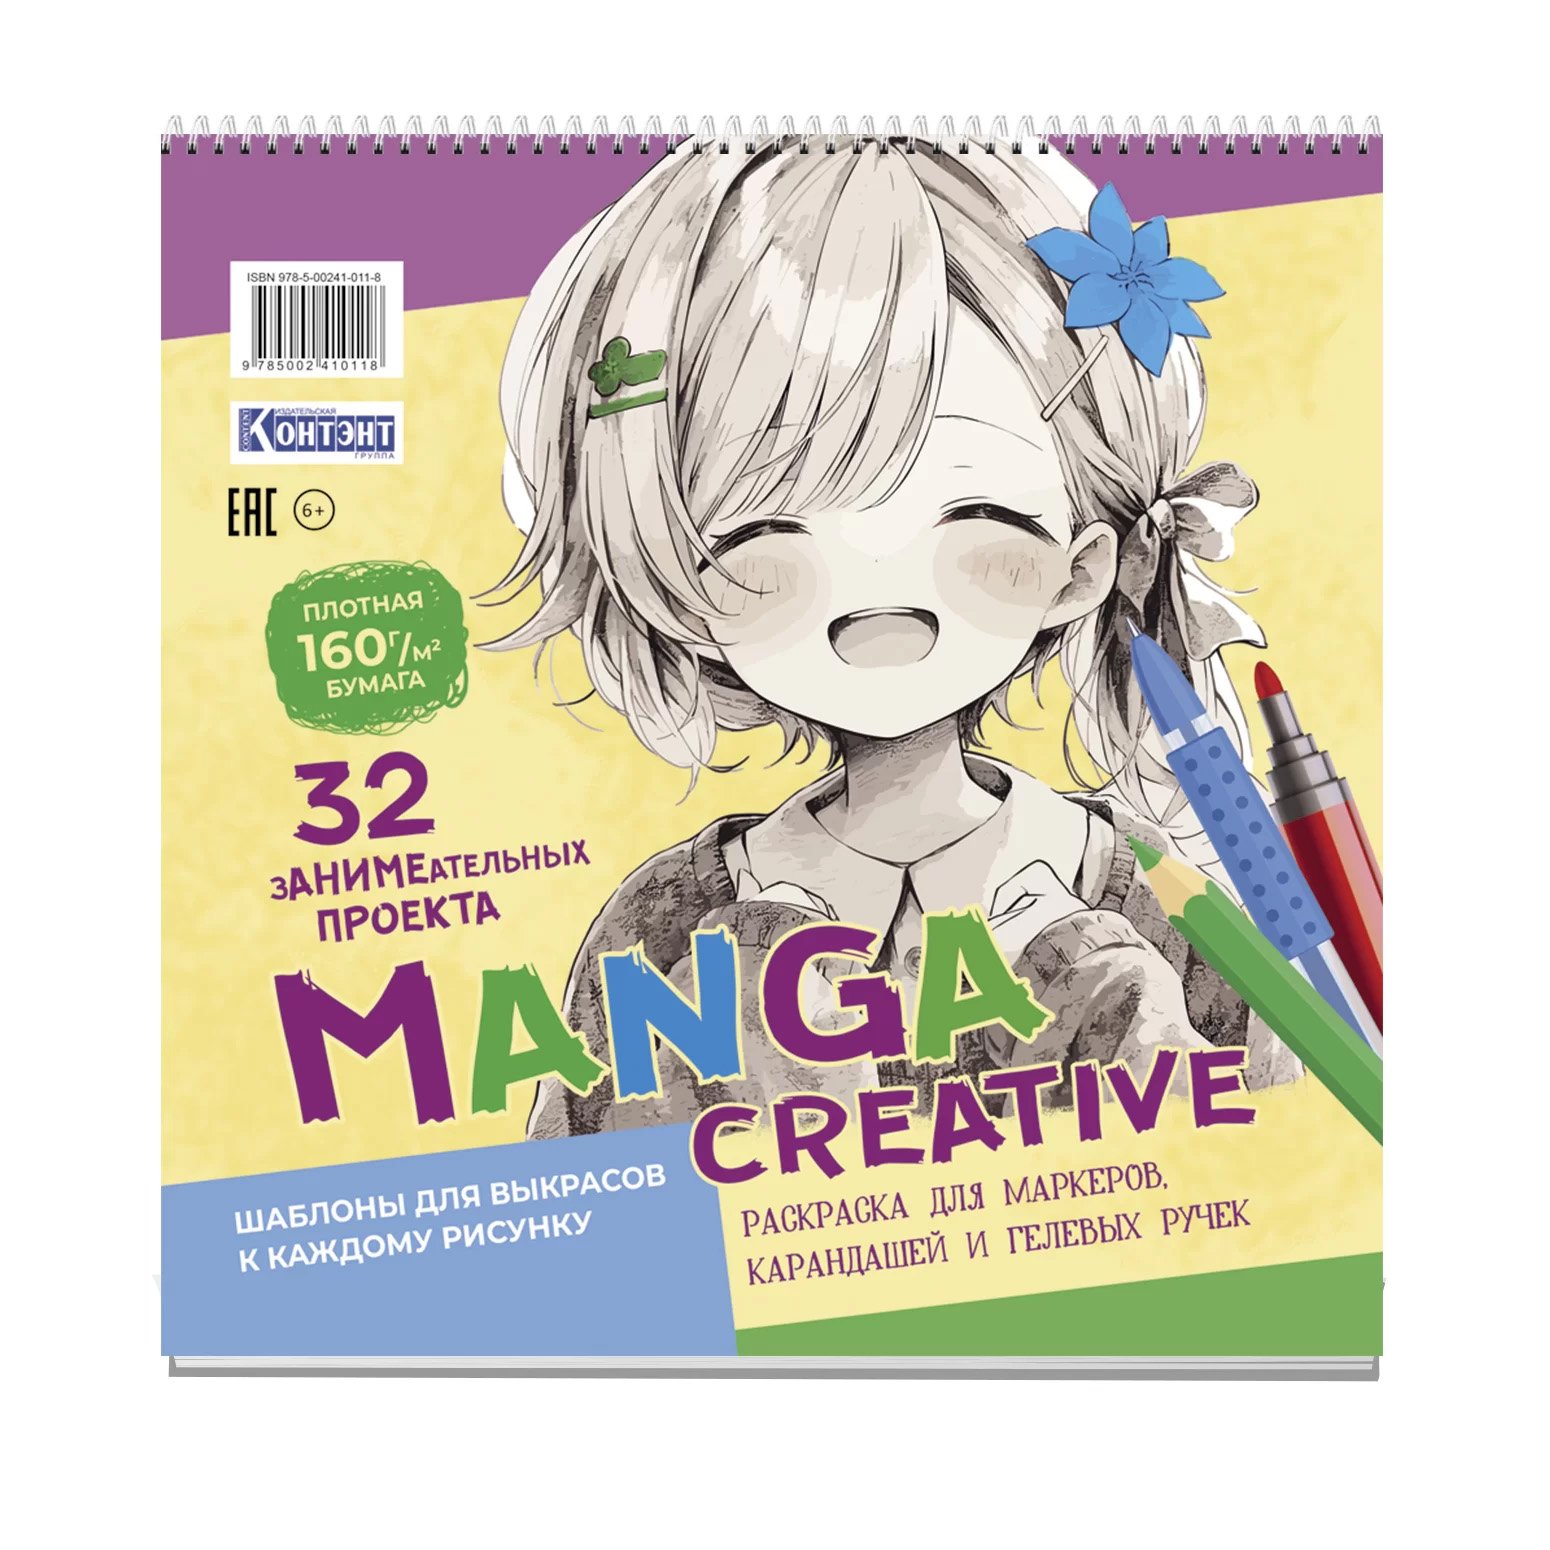  Manga Creative (  )